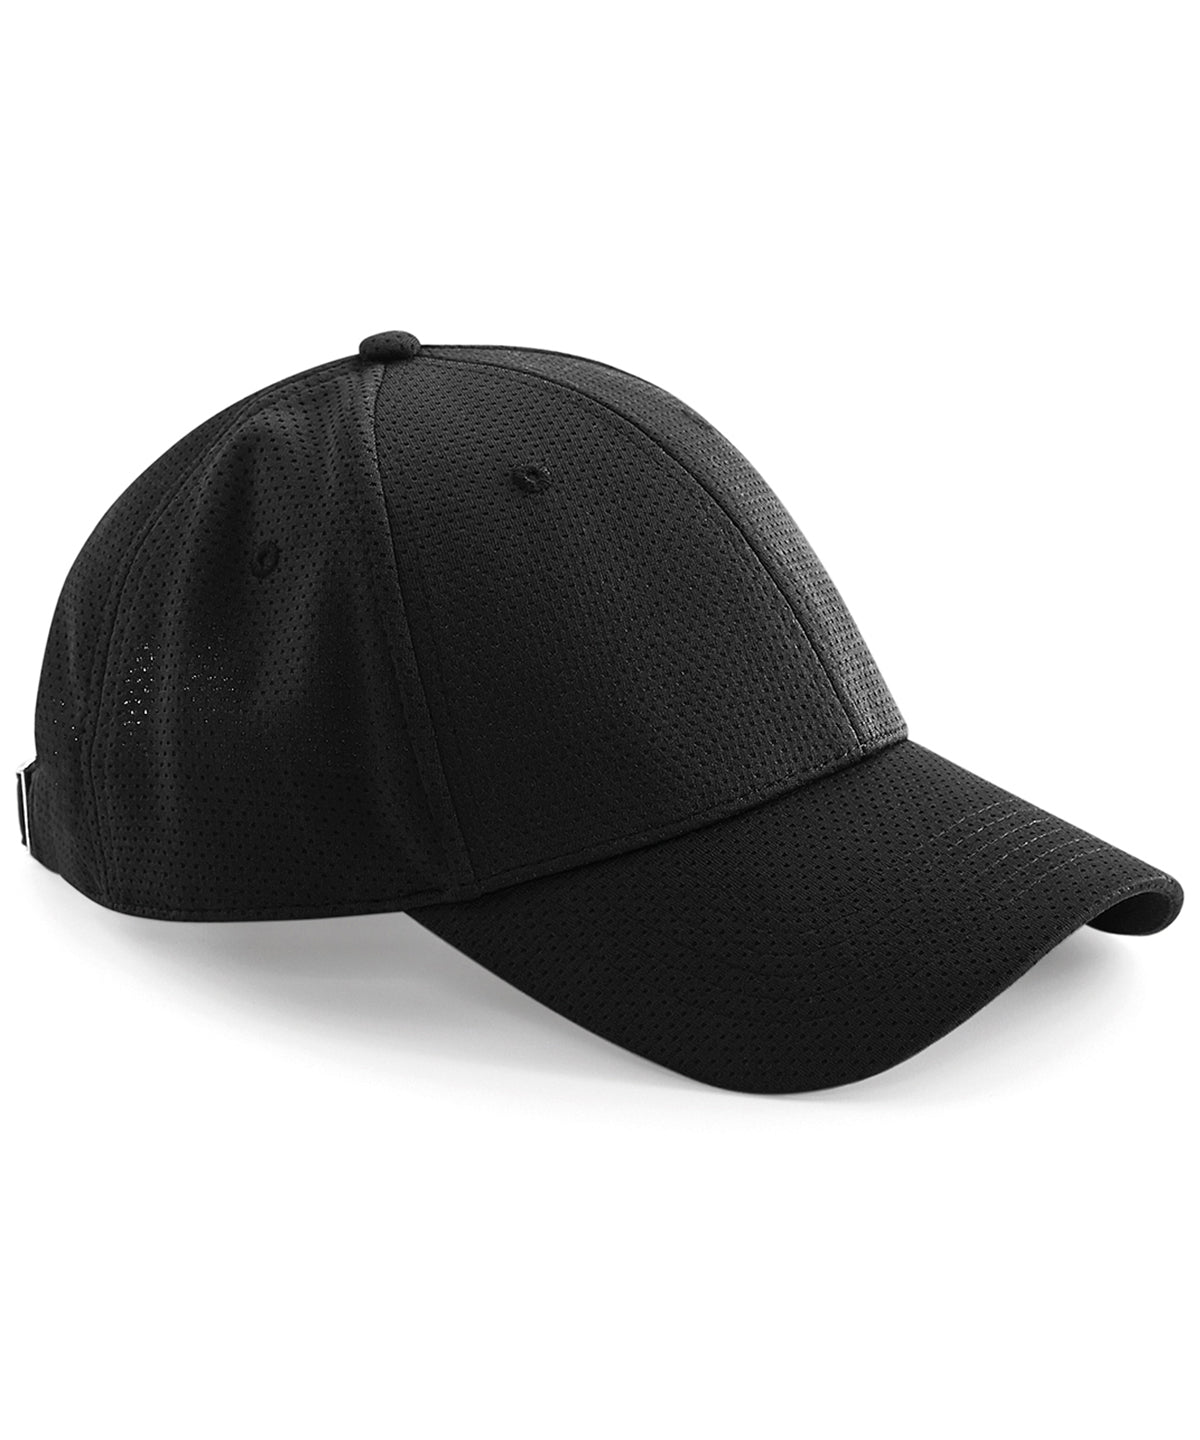 Personalised Caps - Black Beechfield Air mesh 6-panel cap